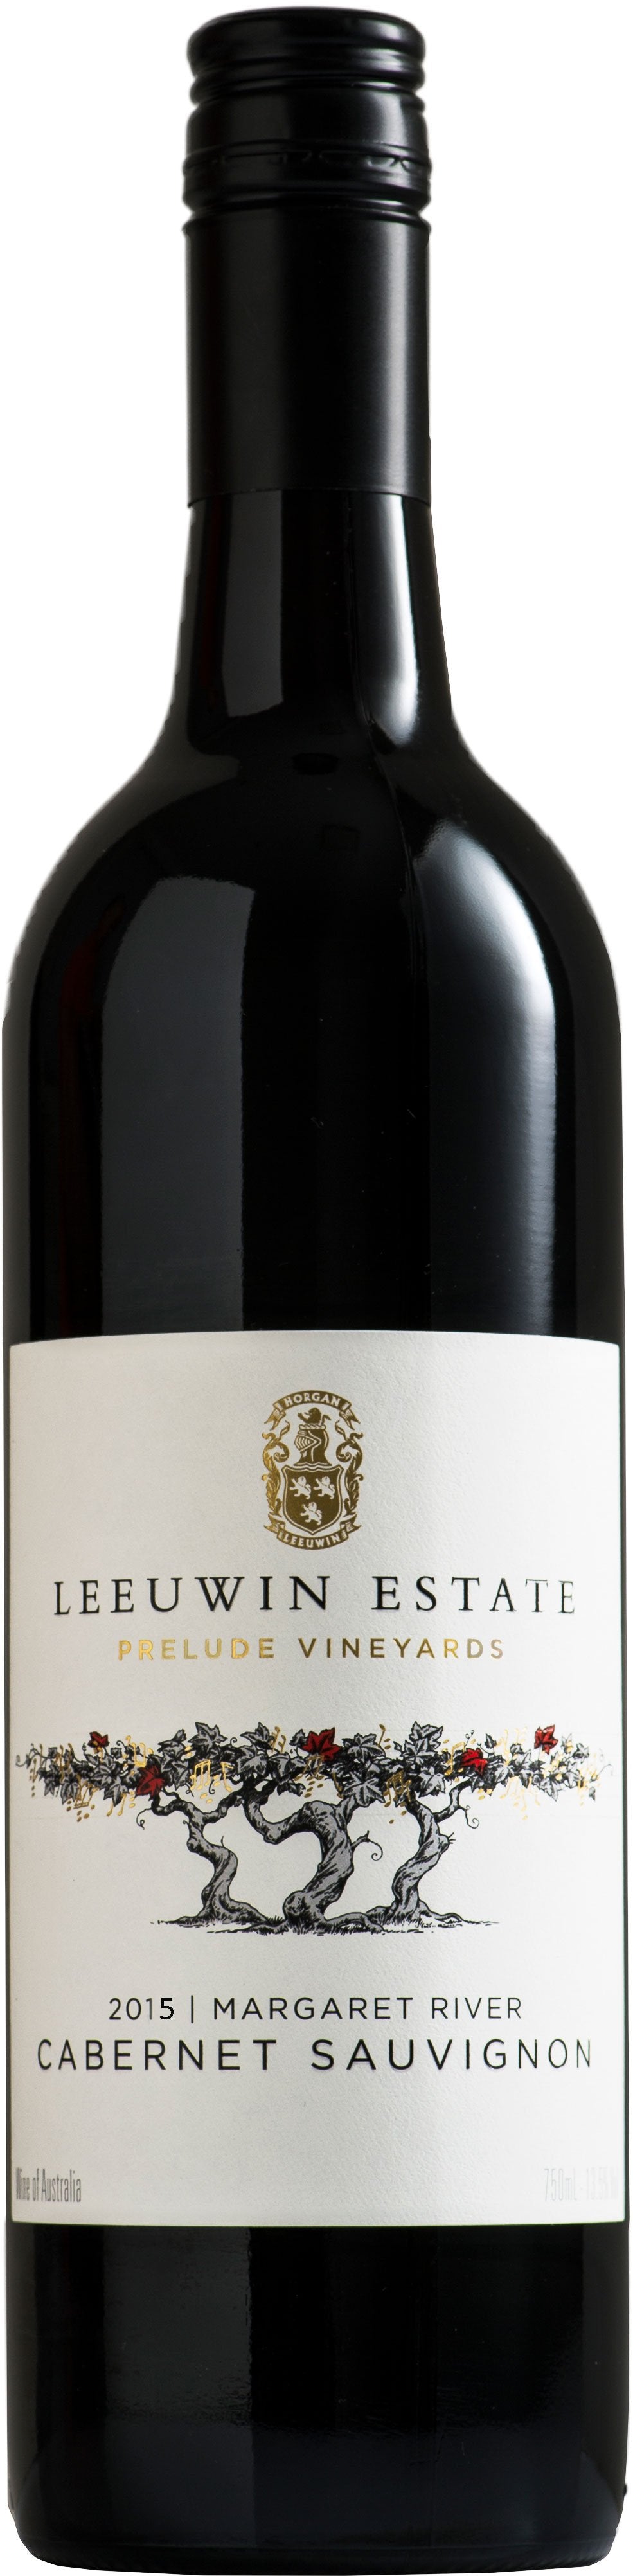 Leeuwin Estate Cabernet Sauvignon Prelude Vineyards 2015